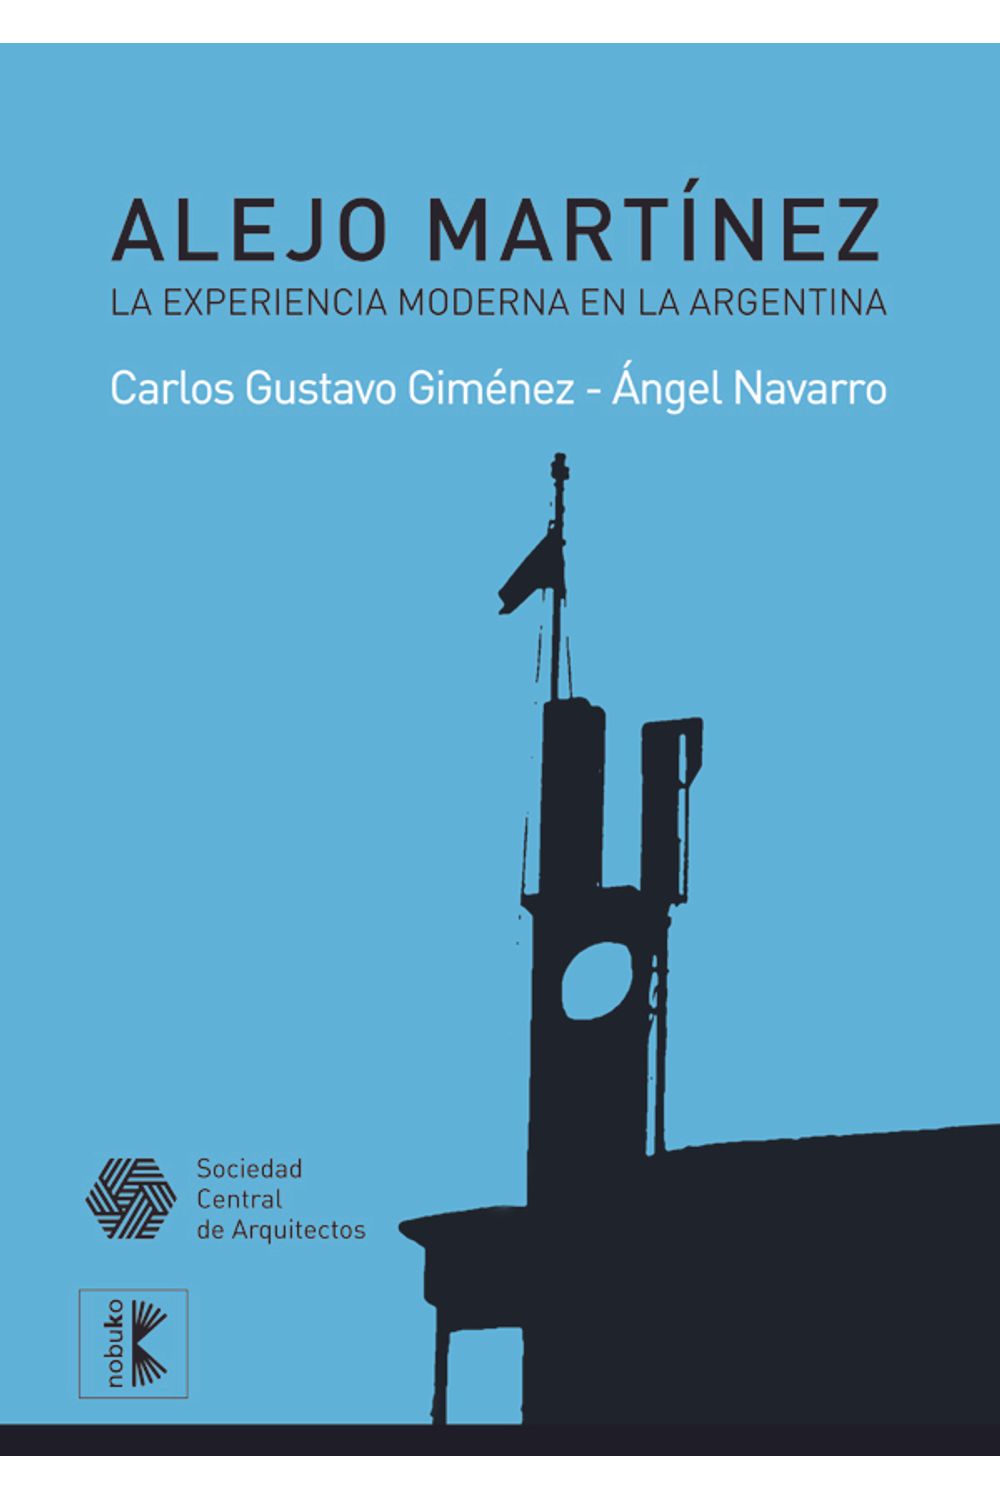 bm-alejo-martinez-la-experiencia-moderna-en-la-argentina-nobukodiseno-editorial-9789875844834